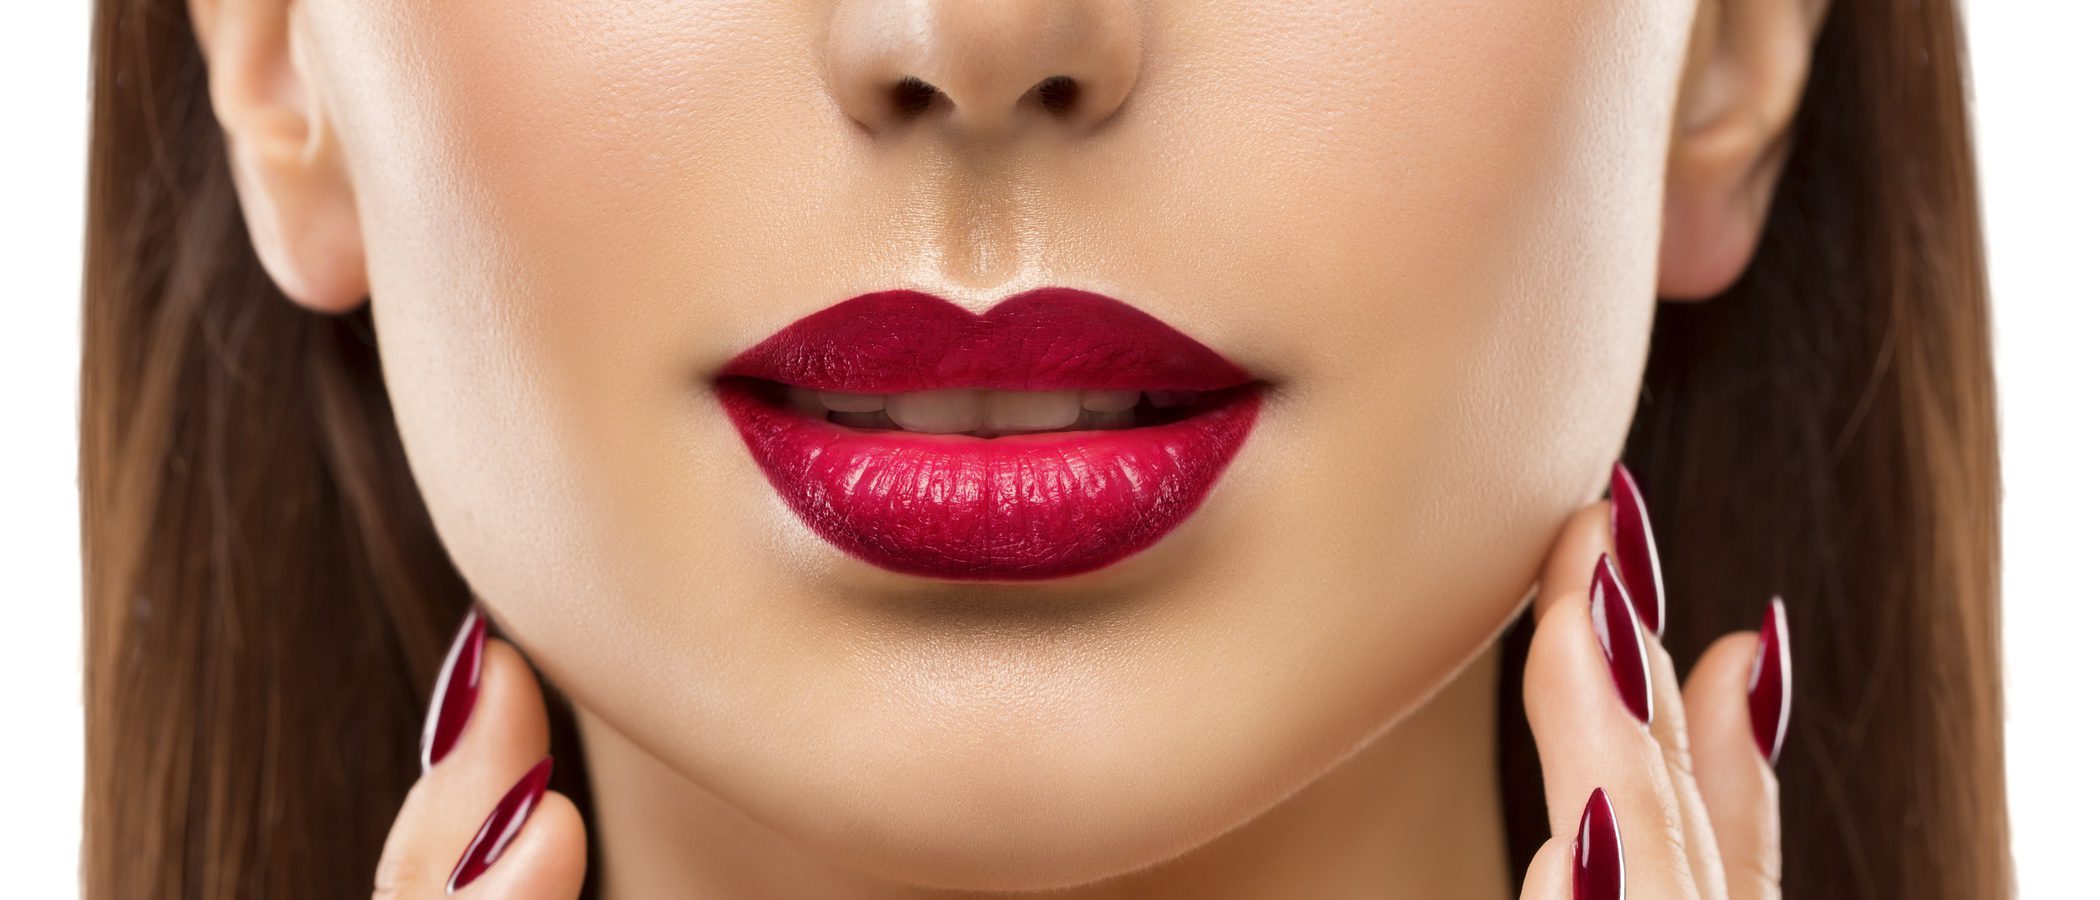 Cómo maquillarse los labios con forma de corazón